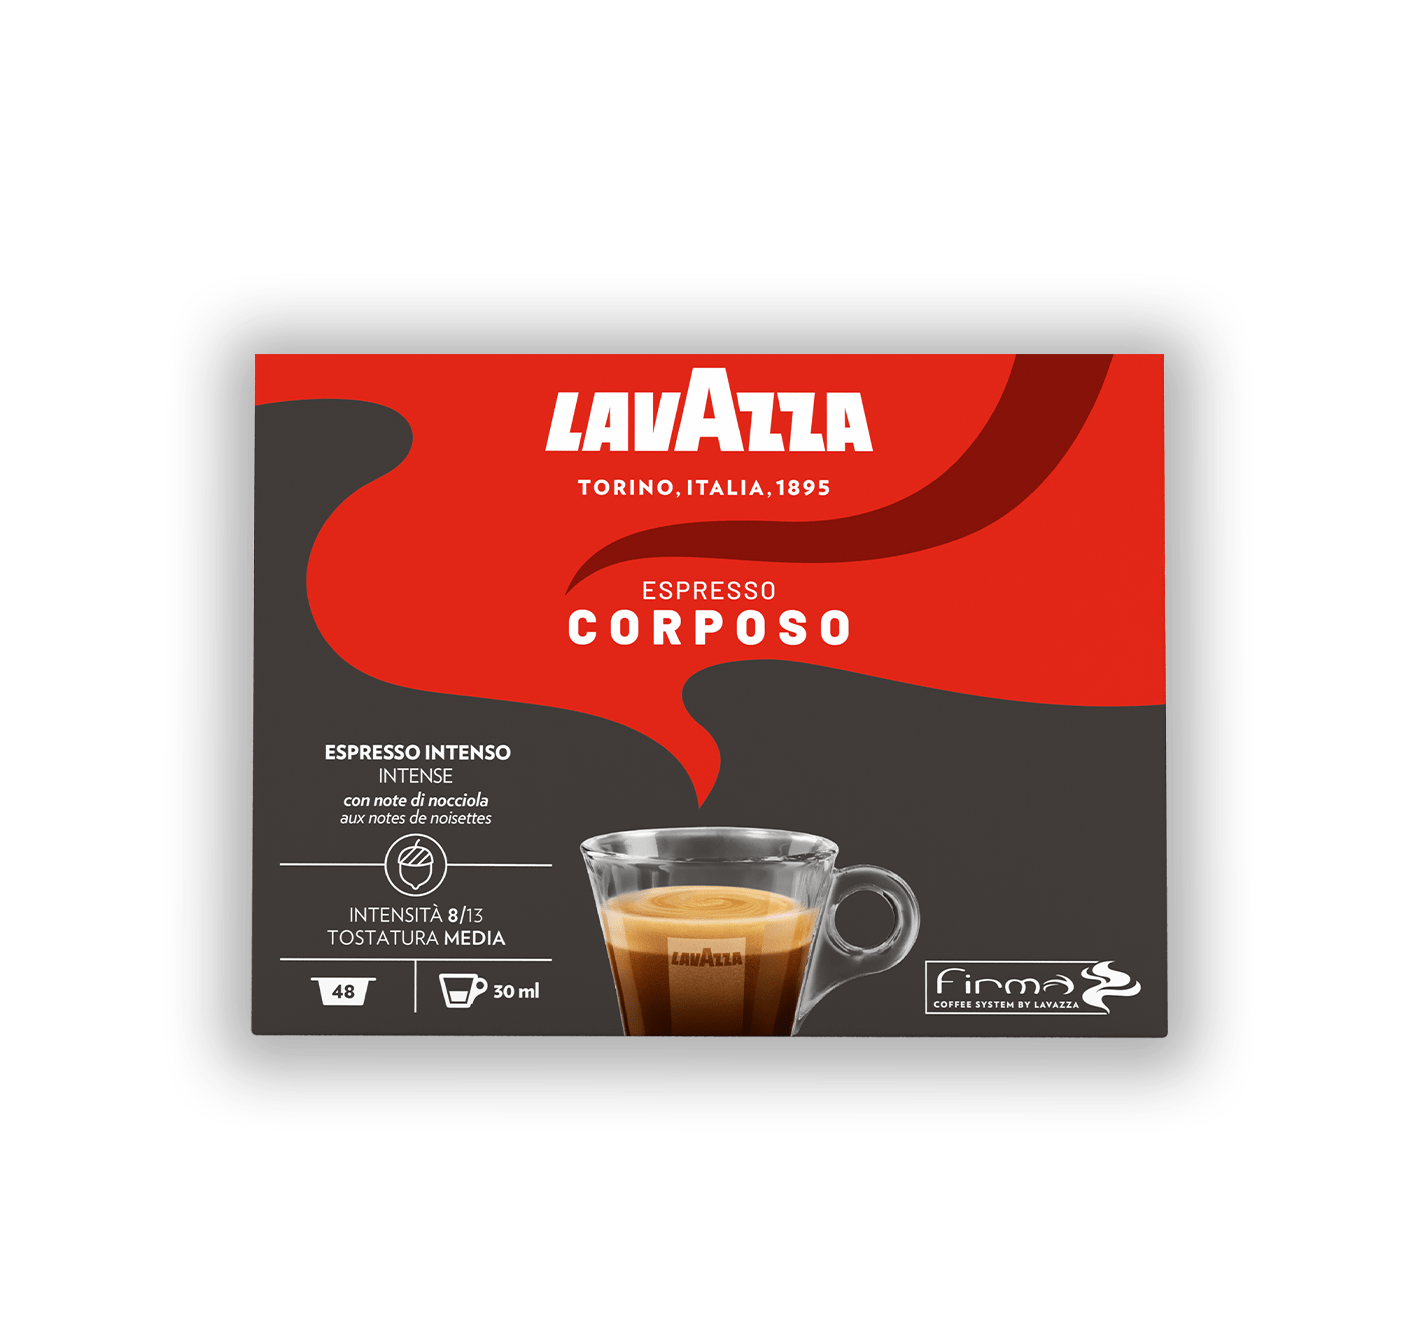 Espresso Corposo